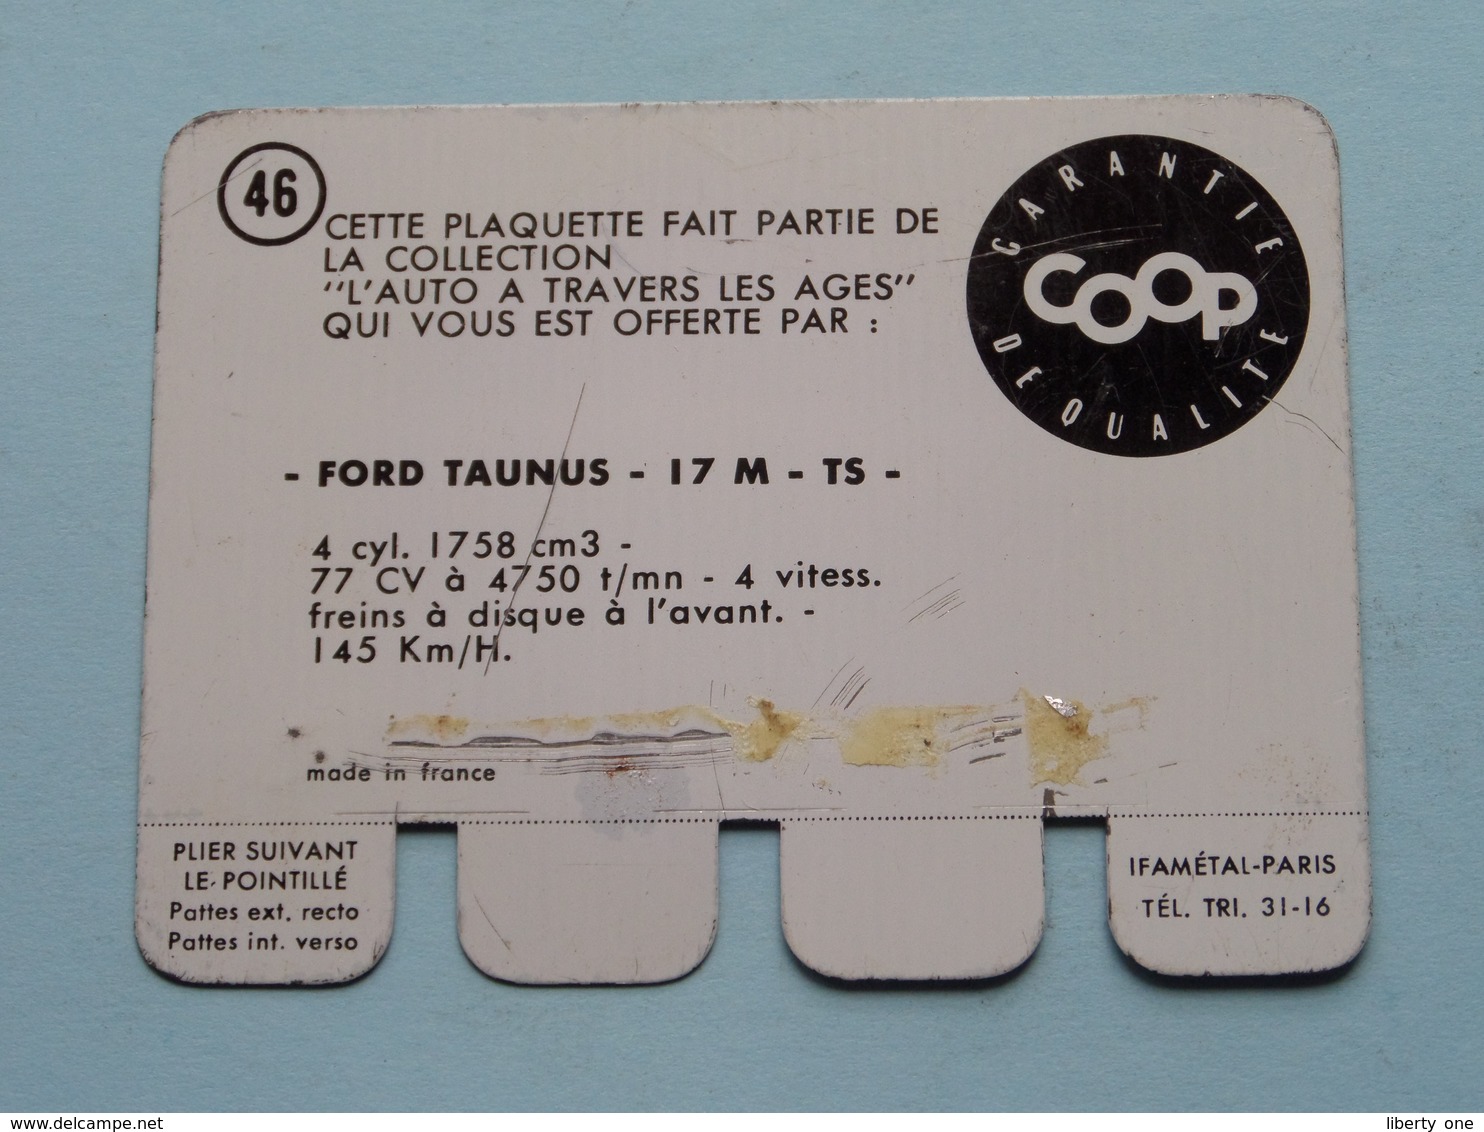 FORD TAUNUS 17 M TS - Coll. N° 46 ( Plaquette C O O P - Voir Photo - Ifamétal Paris ) ! - Plaques En Tôle (après 1960)